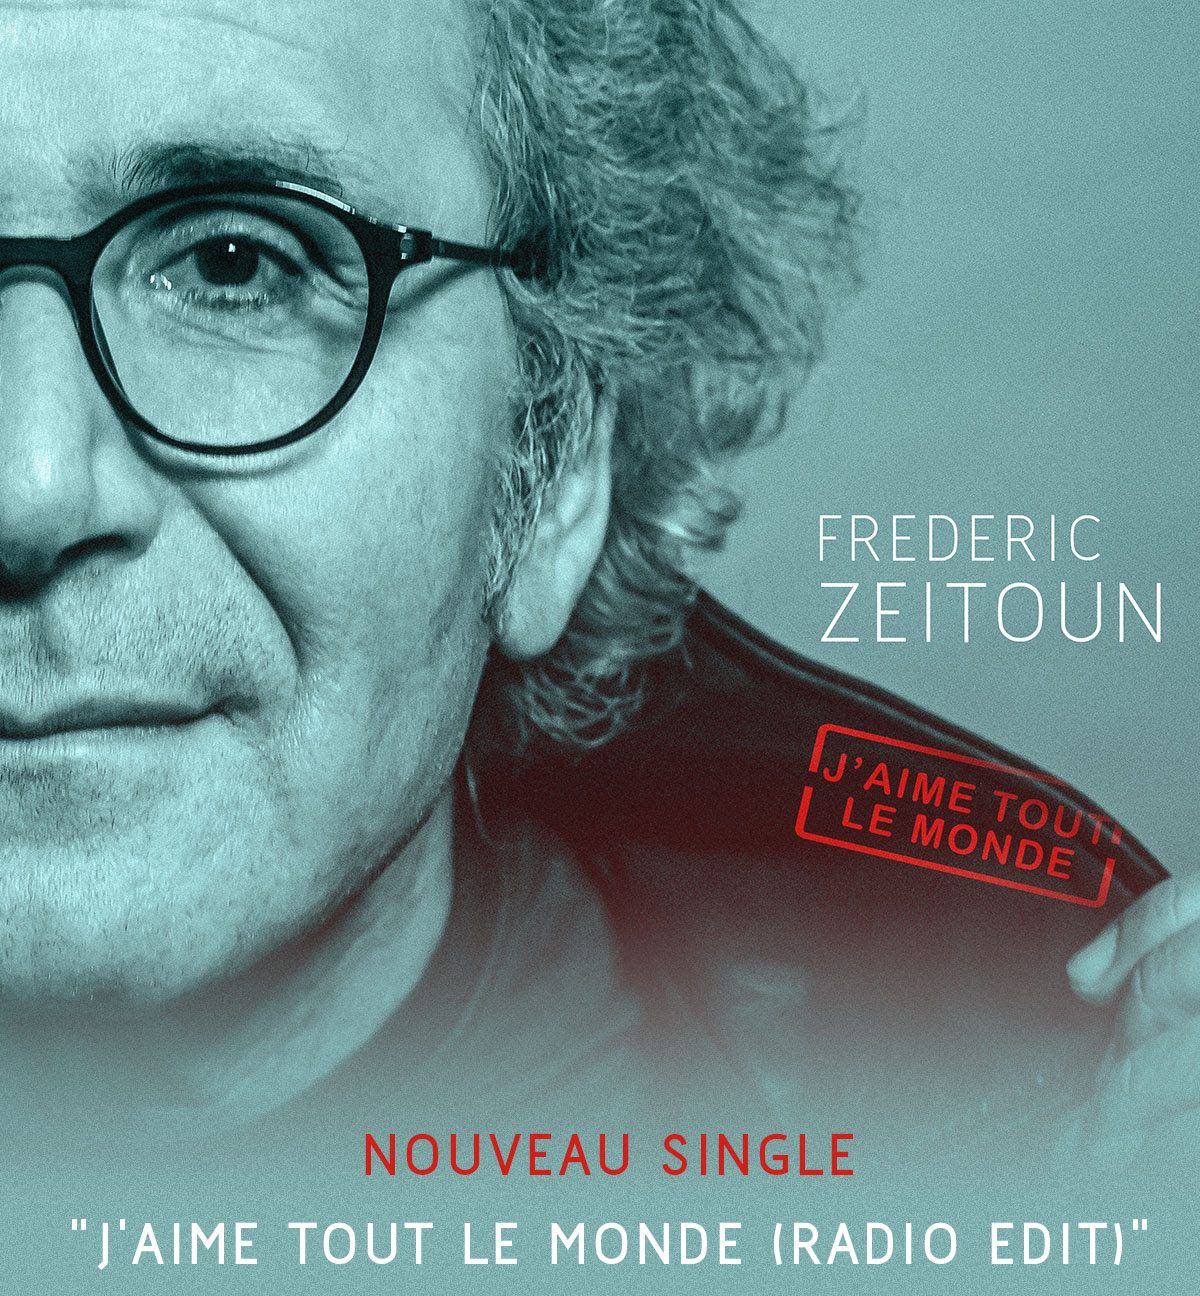 J'aime tout le monde (radio edit), premier extrait du nouvel album de Frédéric Zeitoun